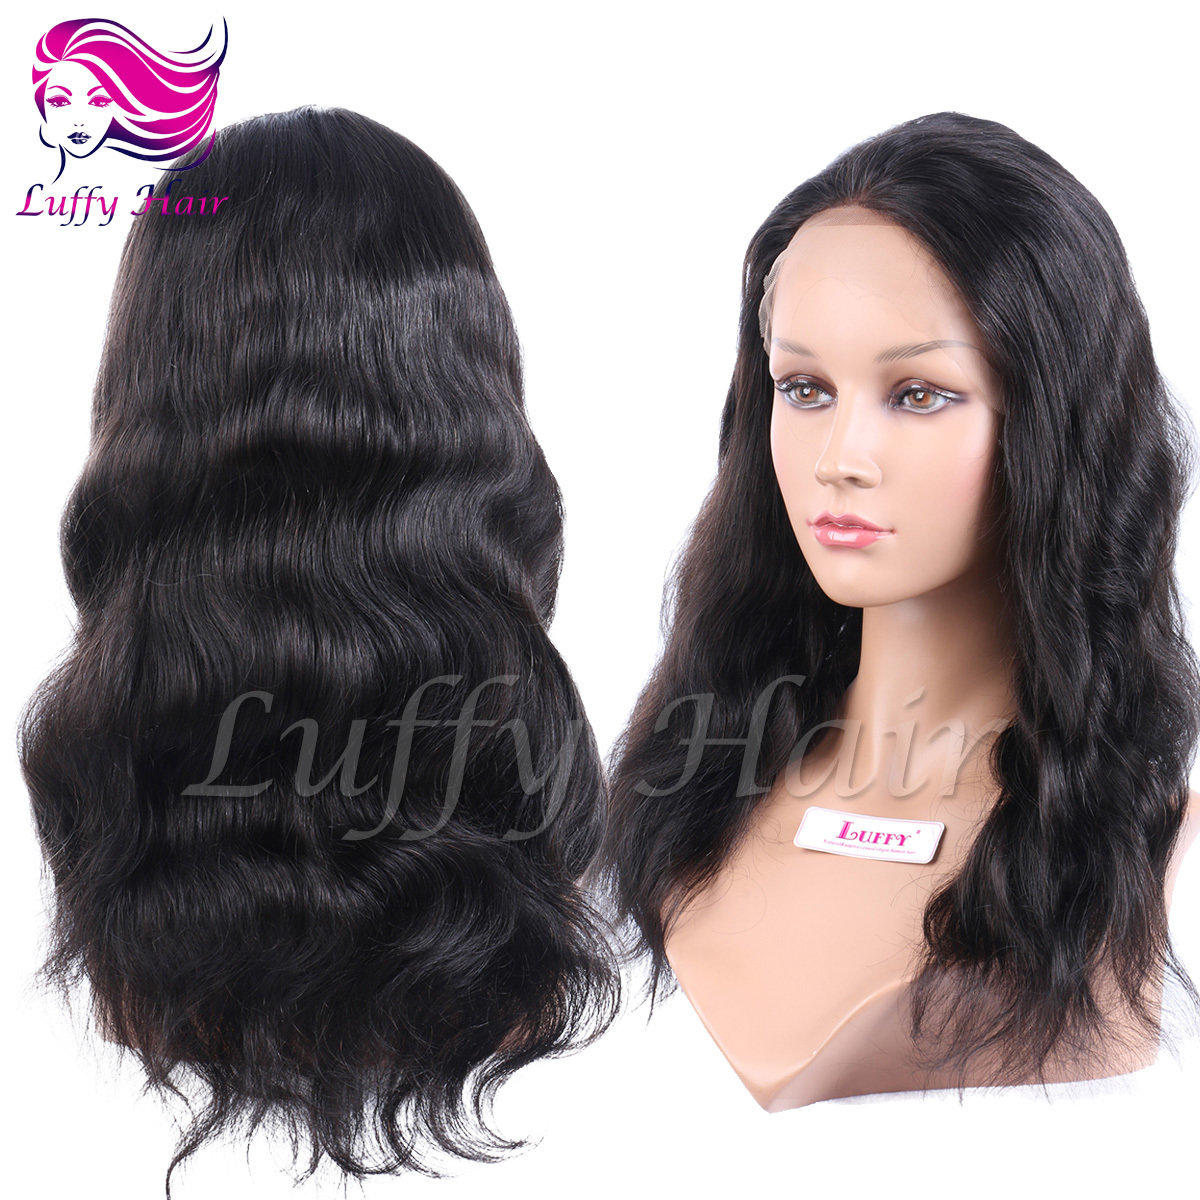 8A Virgin Human Hair Natural Wave Wig - KWL044B